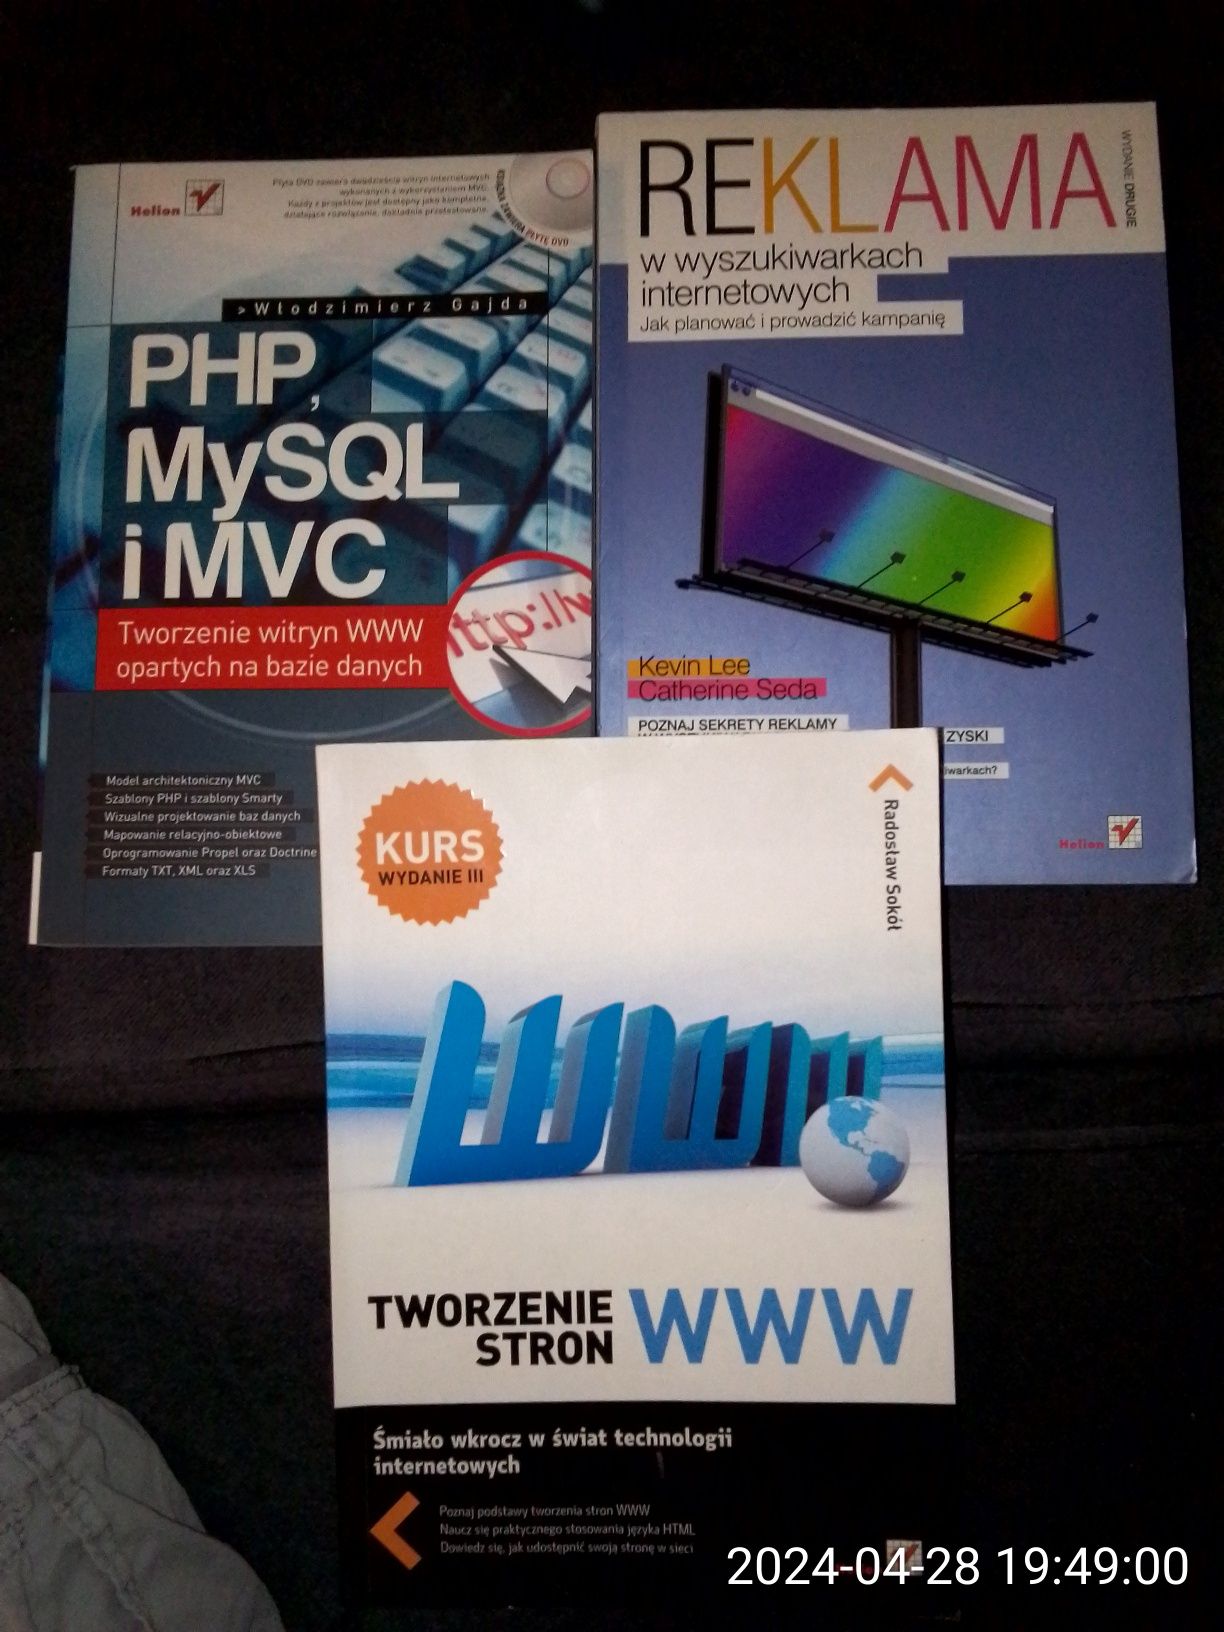 PHP, MYSQL i MVC, Tworzenie stron, Reklama w przeglądarkach